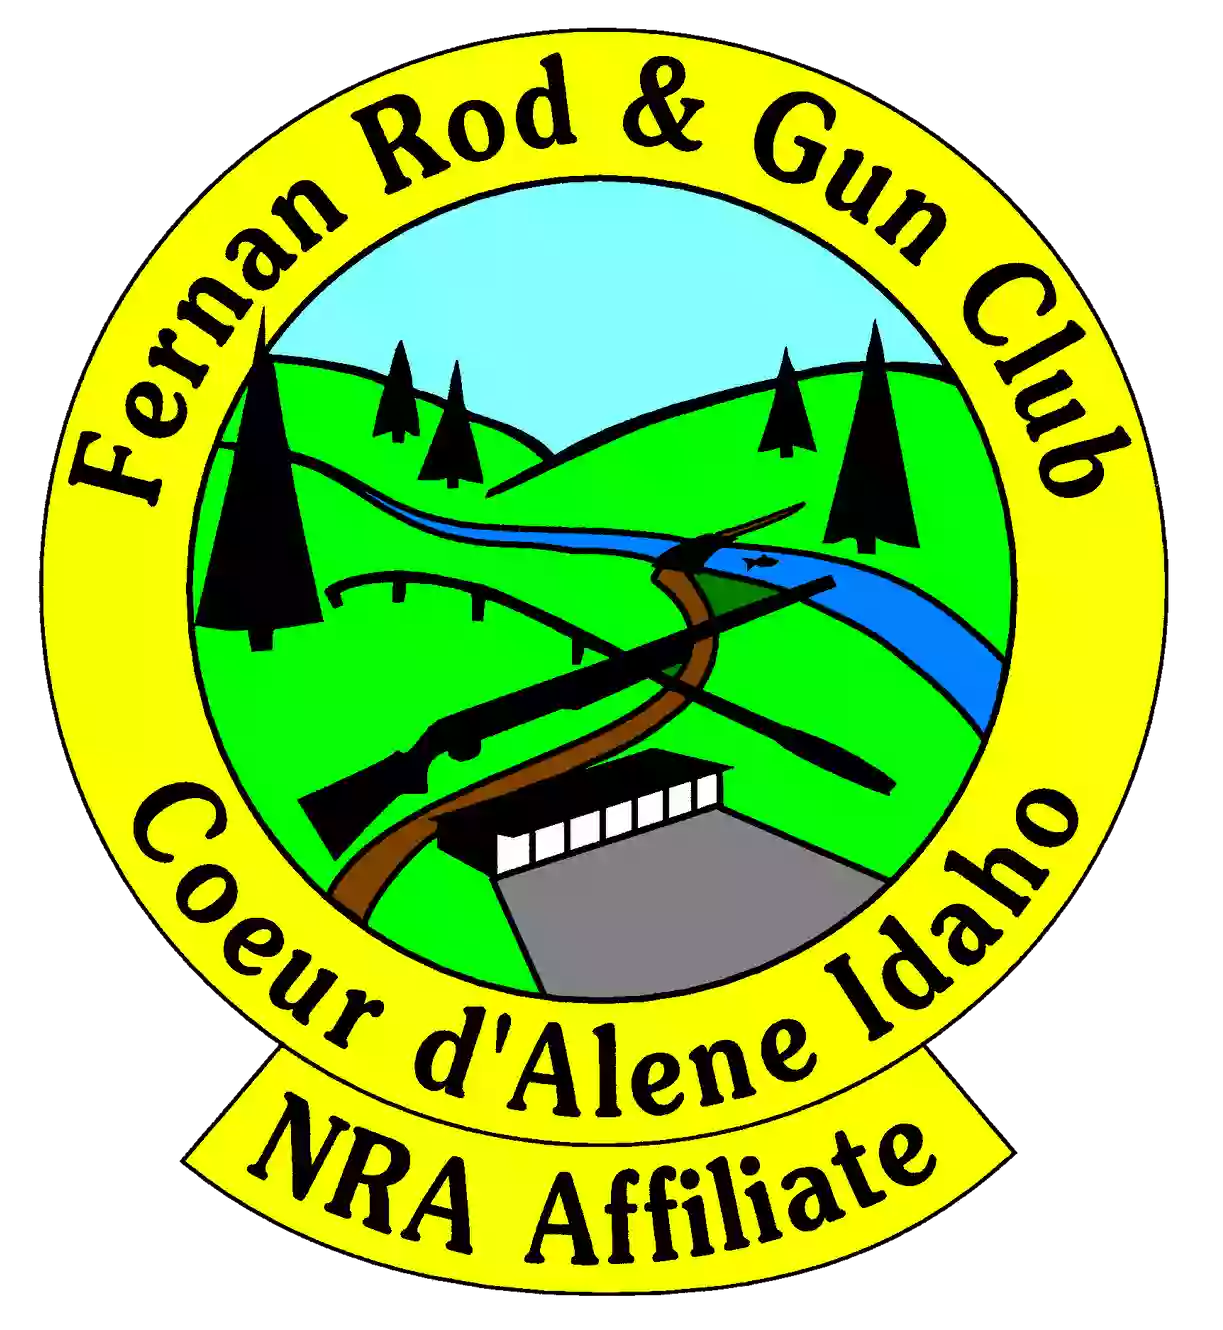 Fernan Rod & Gun Club